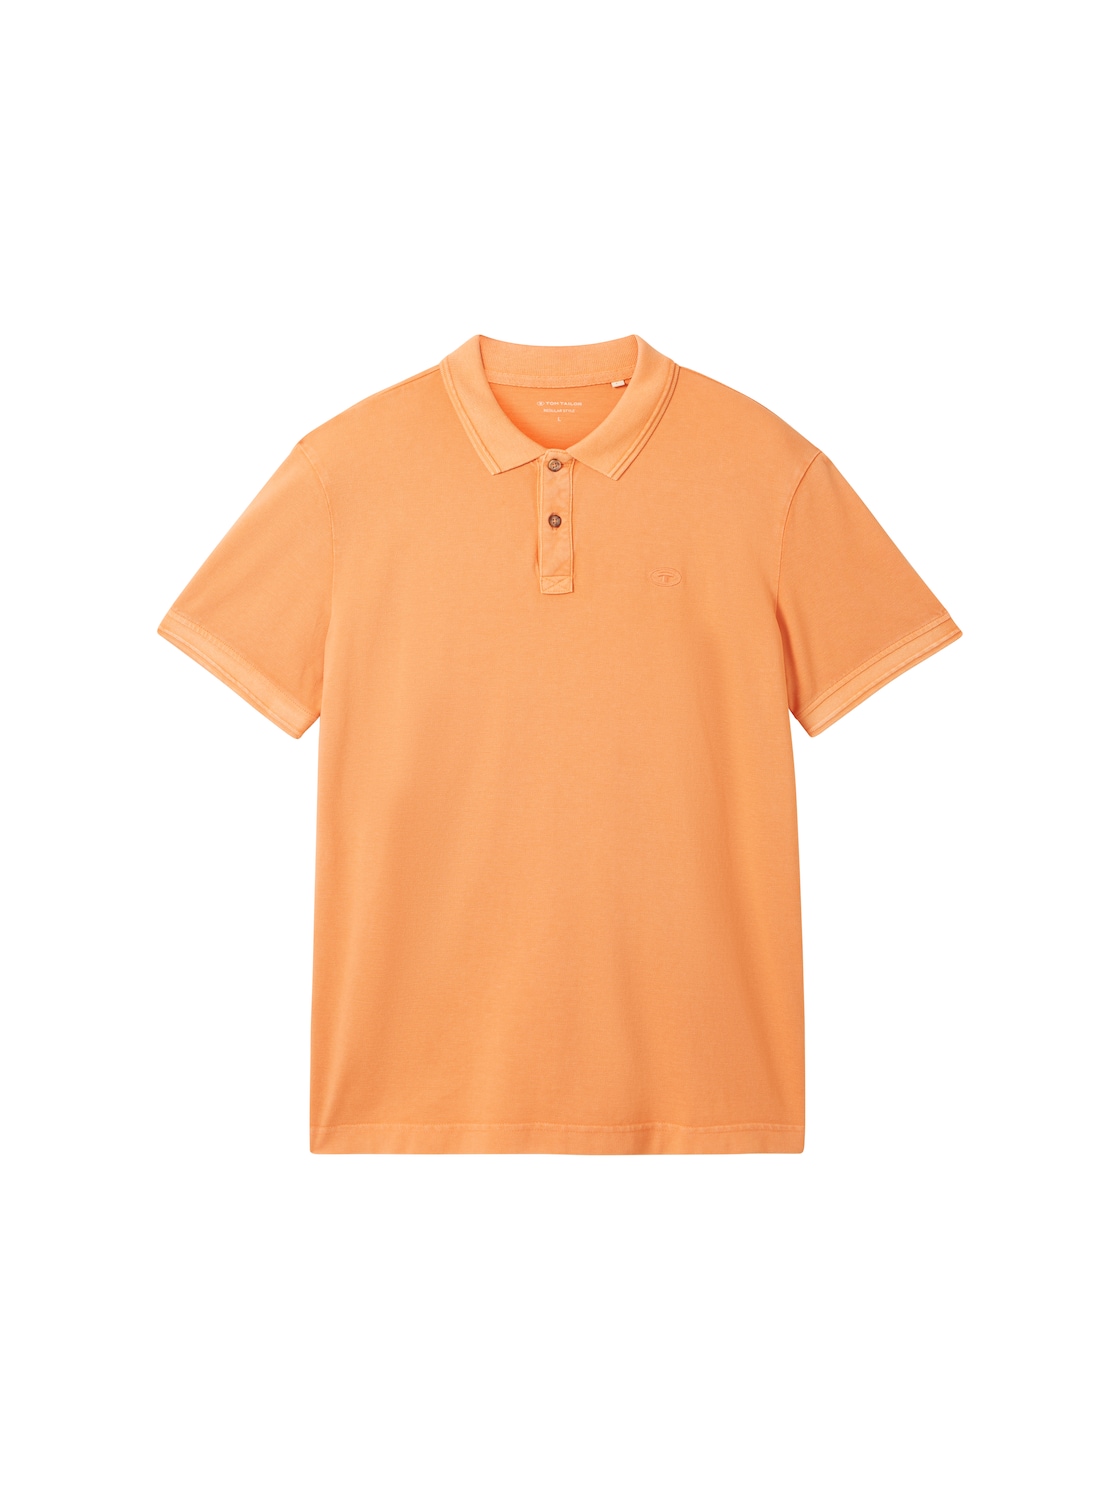 TOM TAILOR Herren Poloshirt mit Logo Stickerei, orange, Uni, Gr. M von Tom Tailor